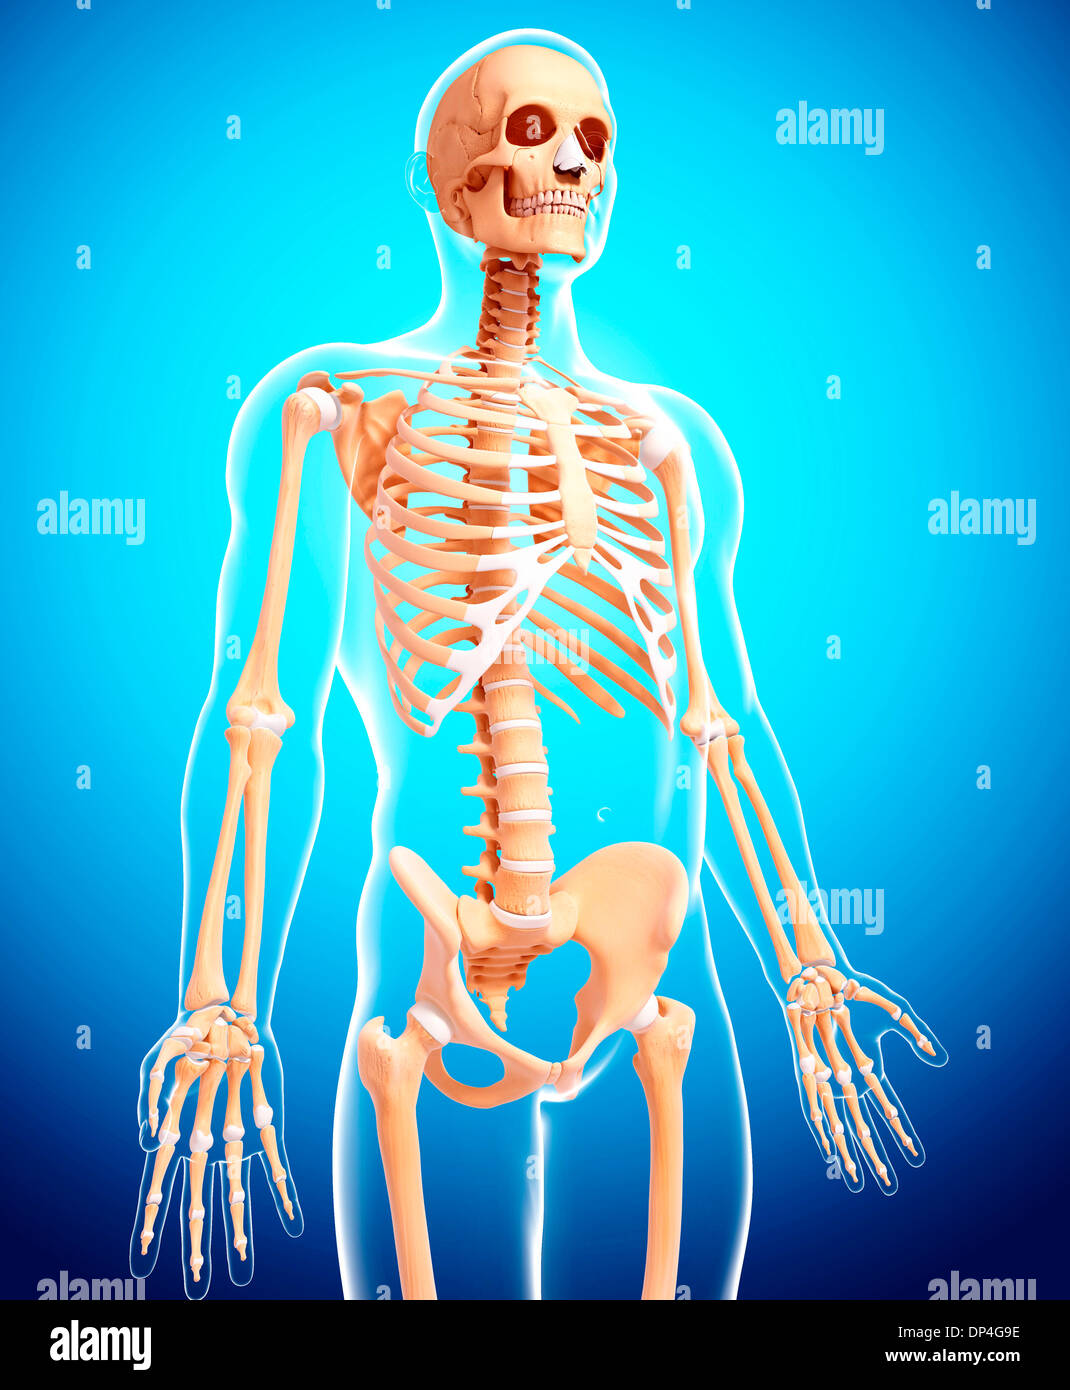 Human skeleton, artwork Stock Photo - Alamy